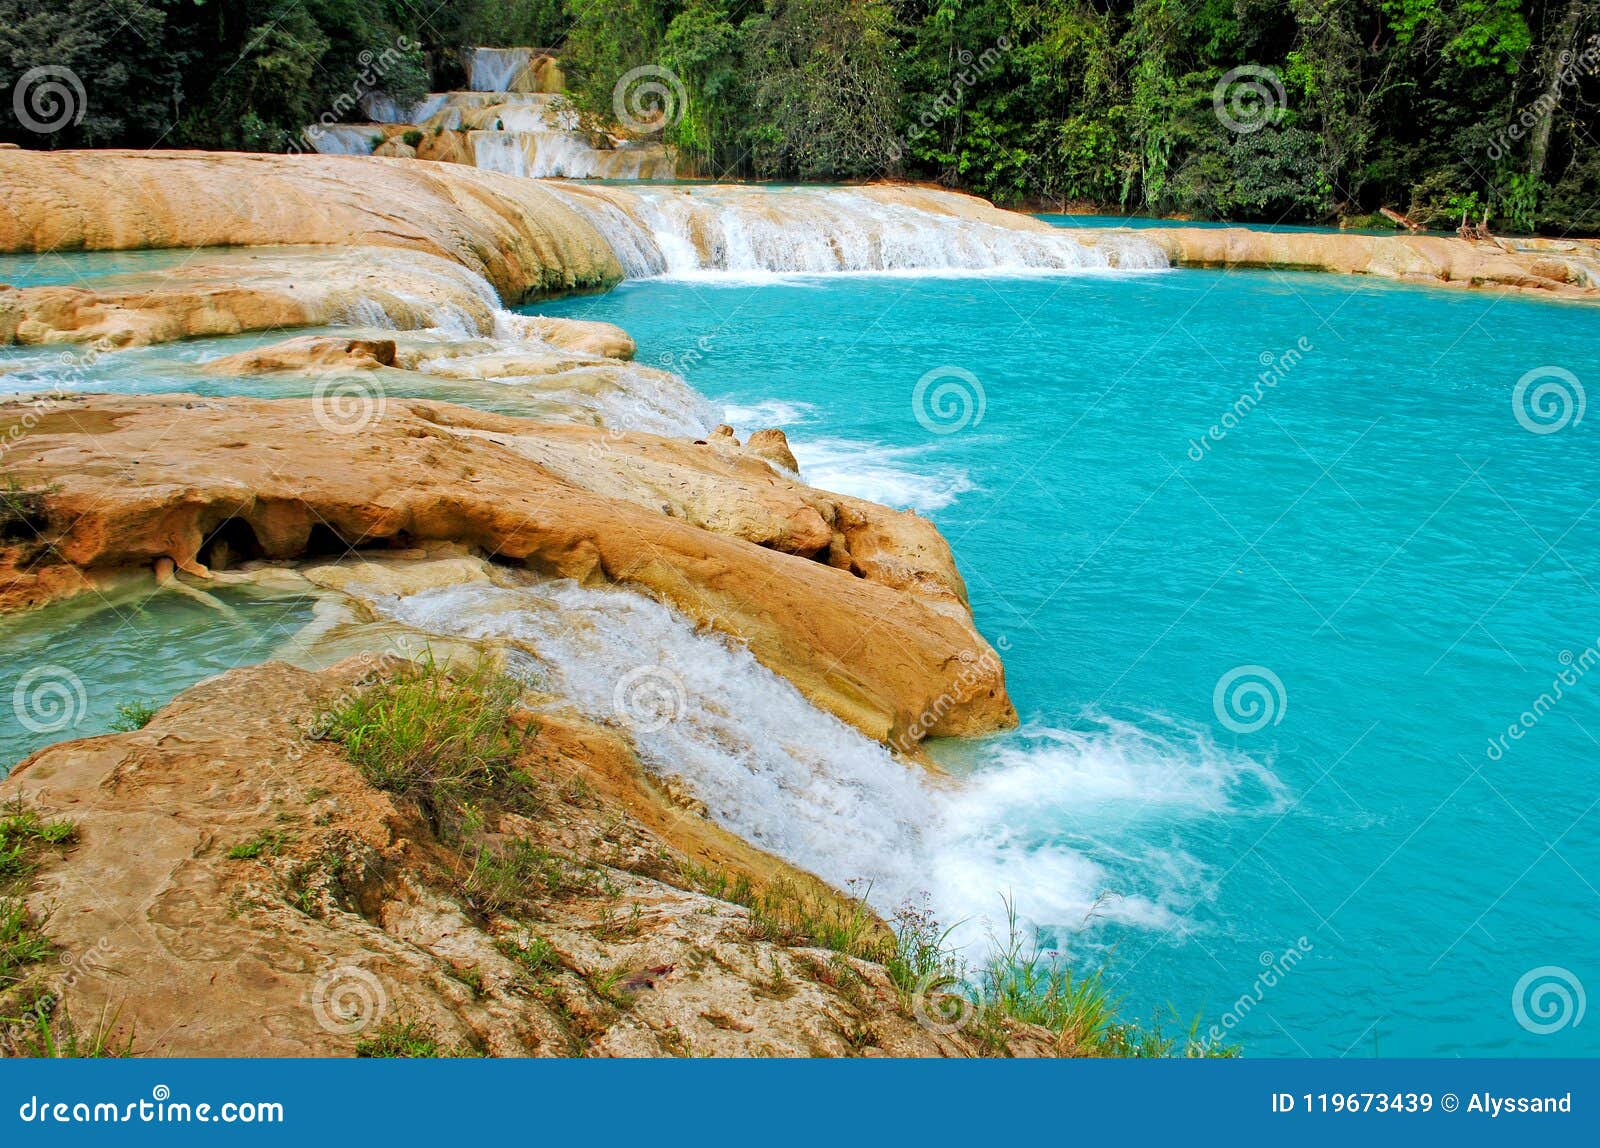 agua azul waterfalls in mexico